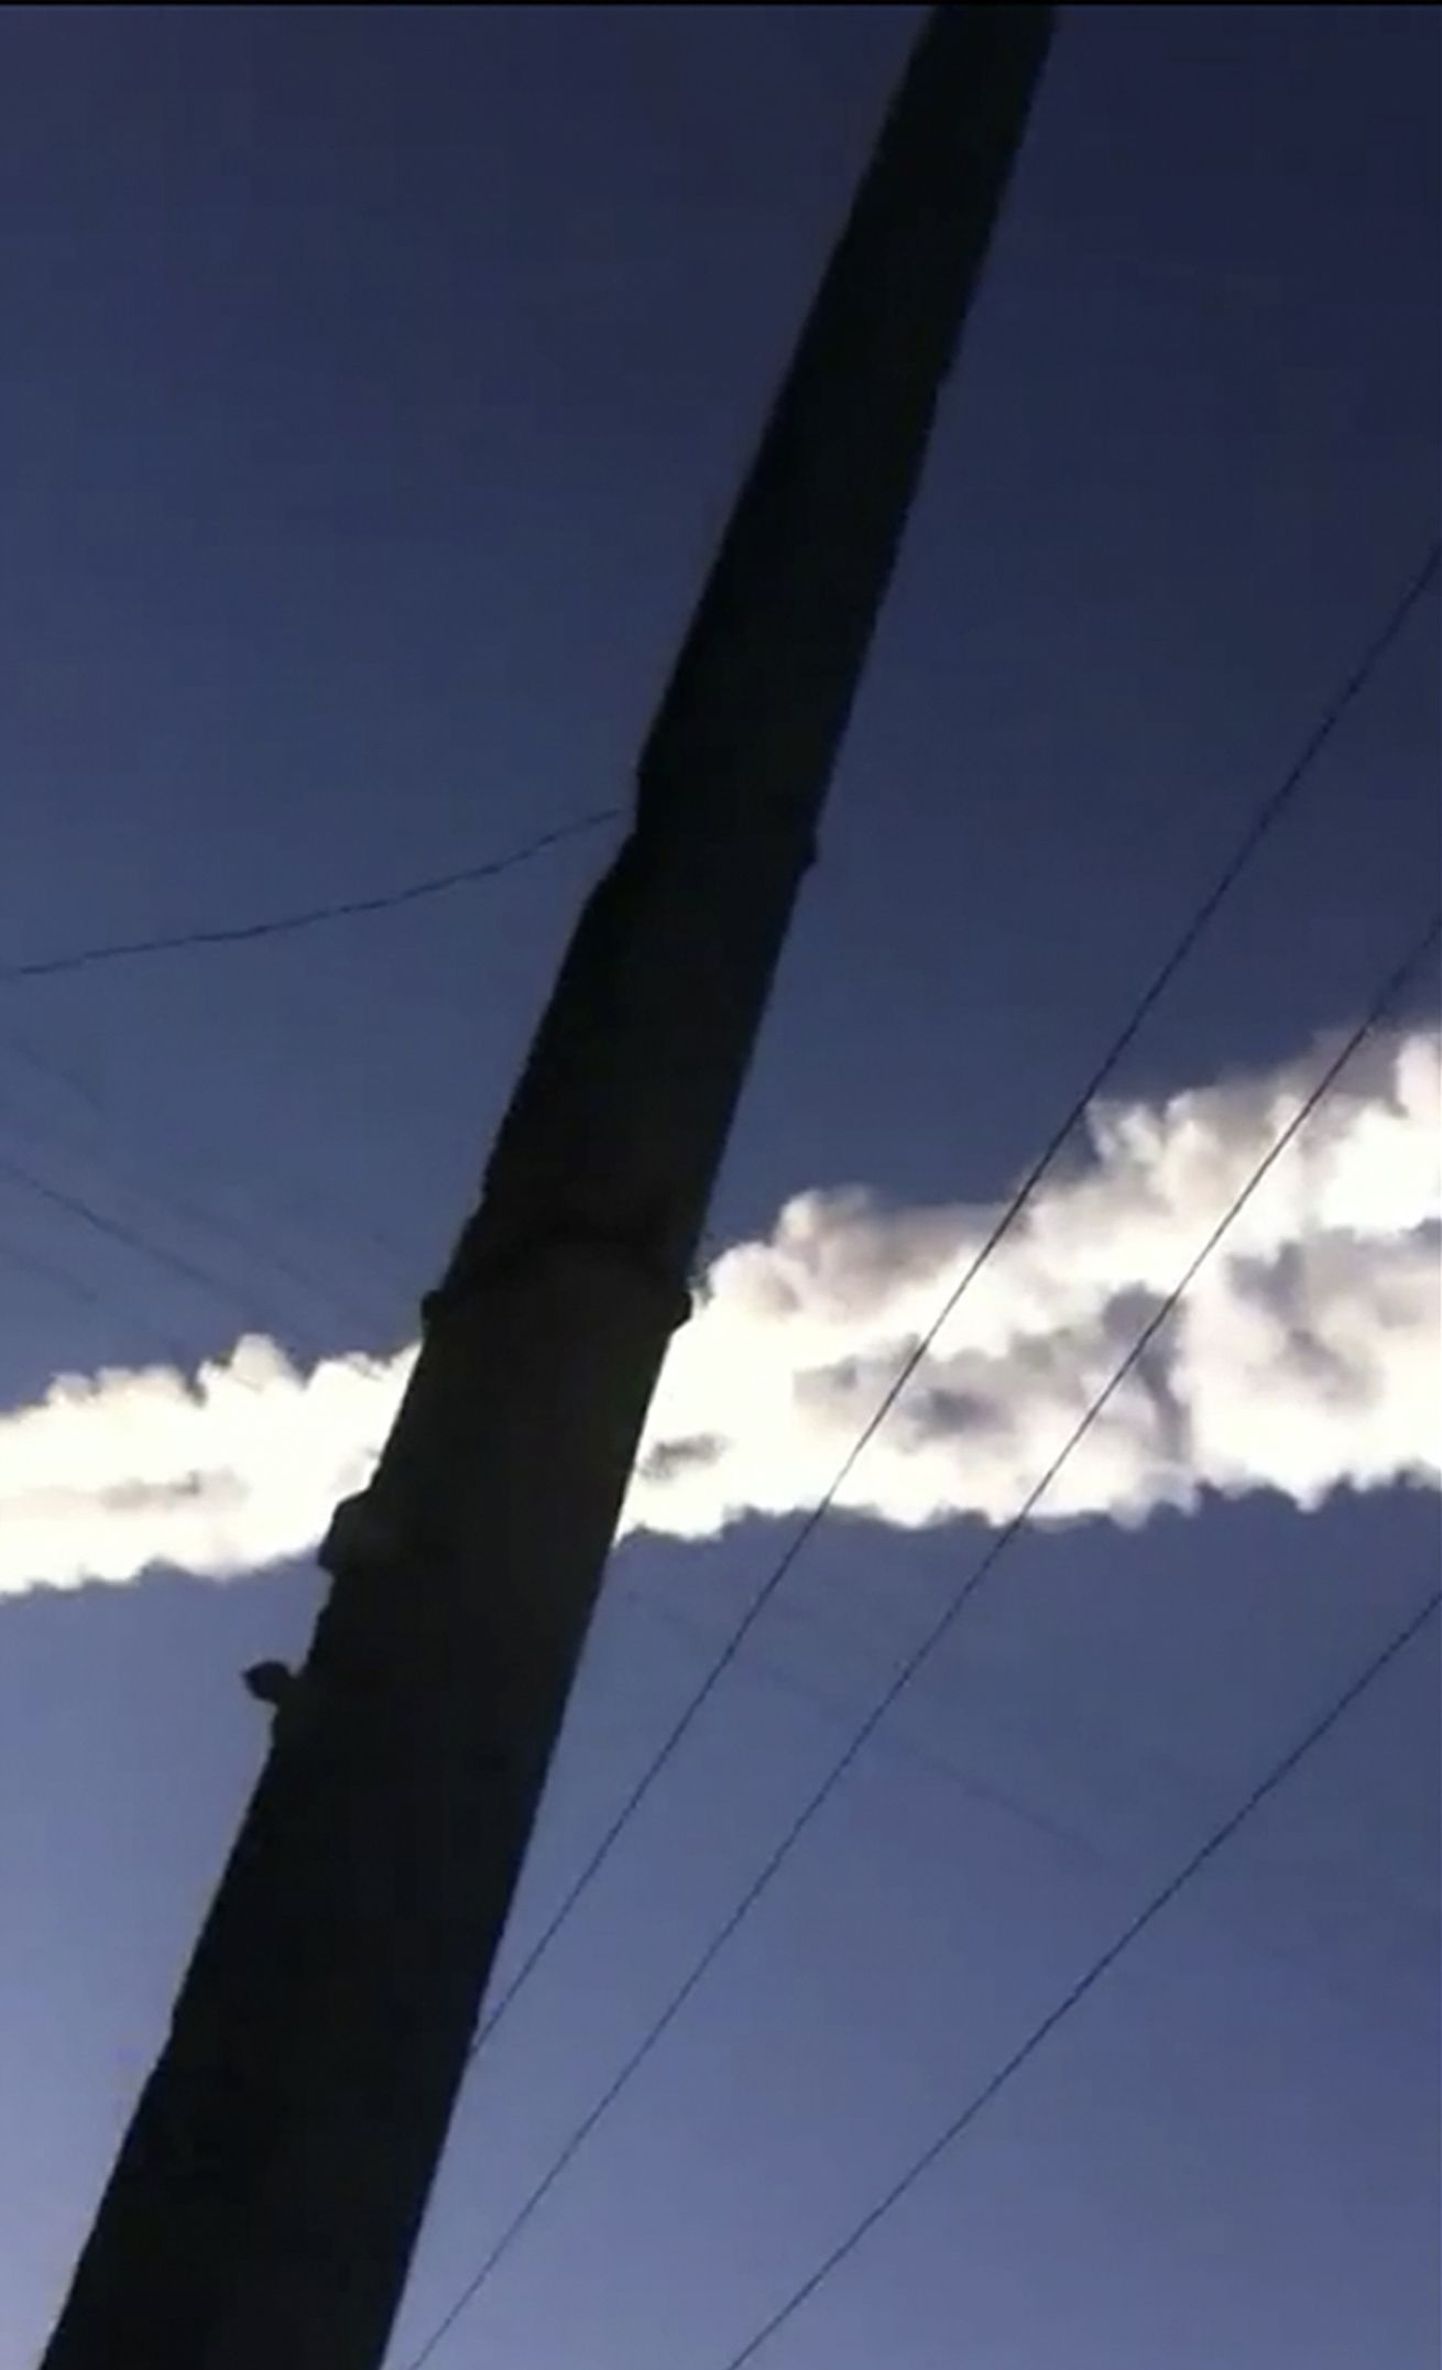 Nädal tagasi tekitas suurt elevust meteoriidisadu Tšeljabinskis.